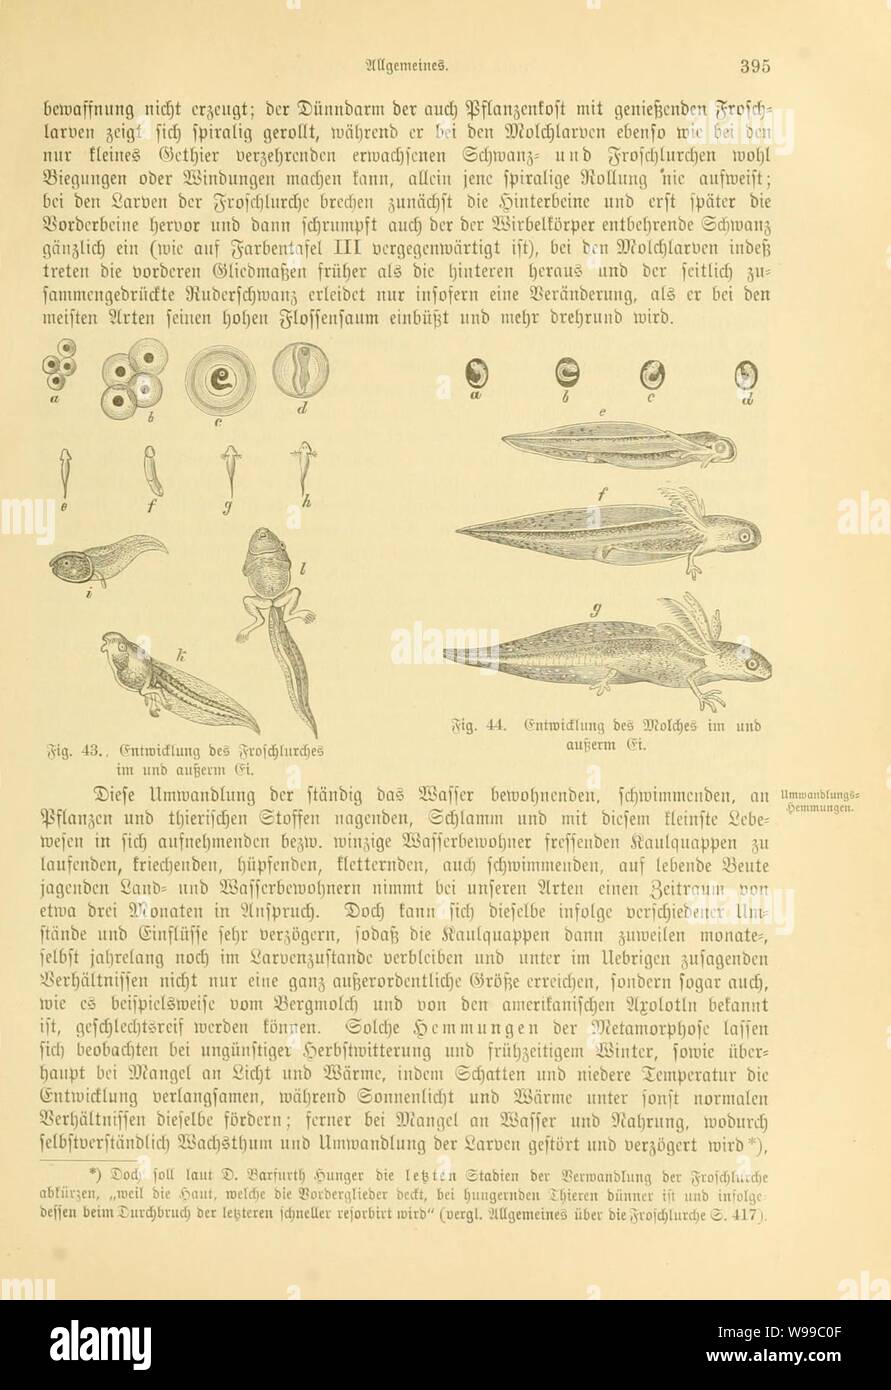 Deutschlands Amphibien und Reptilien (Page 395, Figs. 43-44) Stock Photo